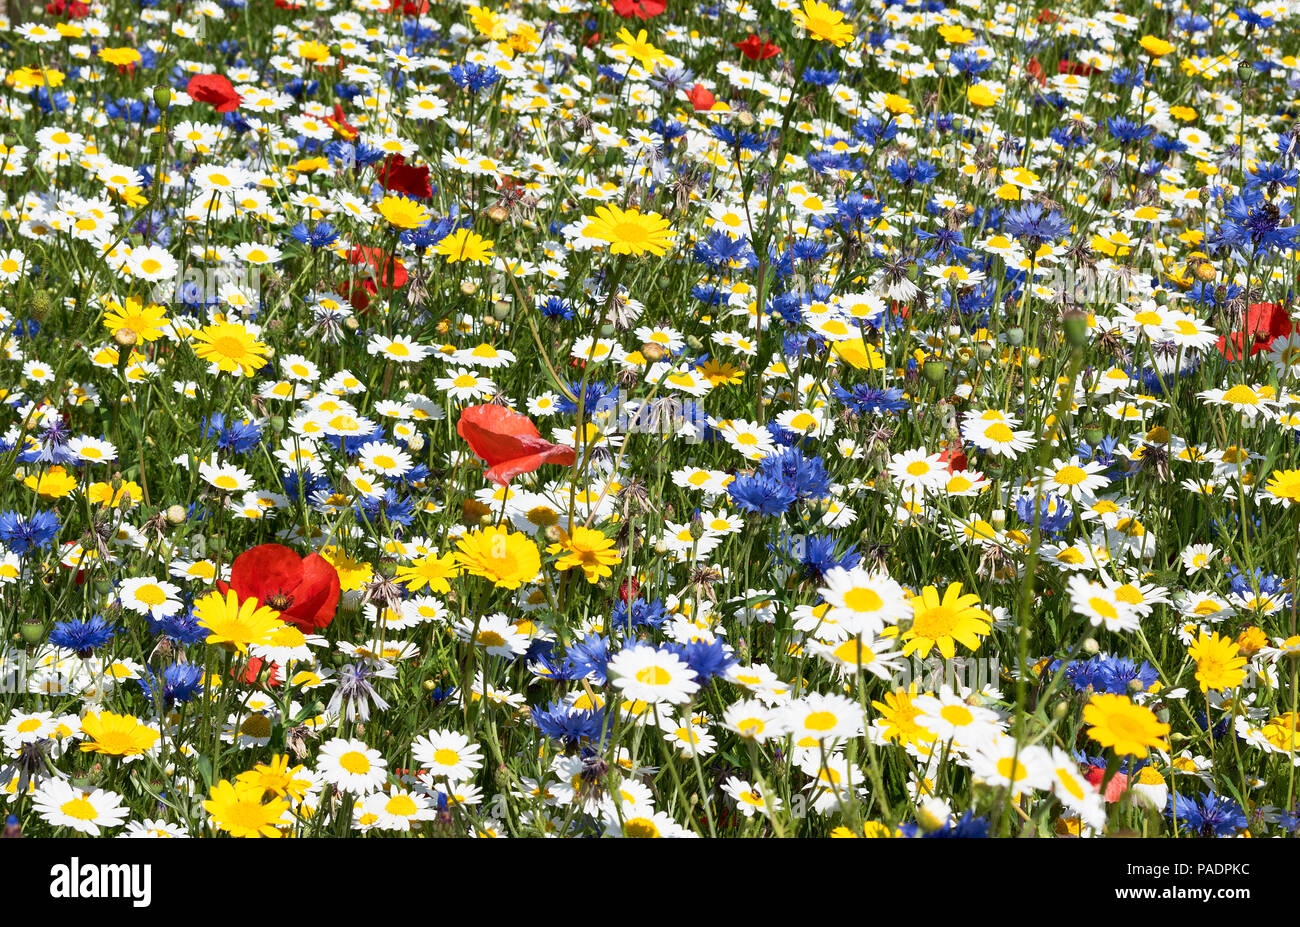 British nativo selvaggio fiore prato a livello nazionale centro di fiori selvaggi, eden project in Cornovaglia, Inghilterra, Regno Unito. Foto Stock